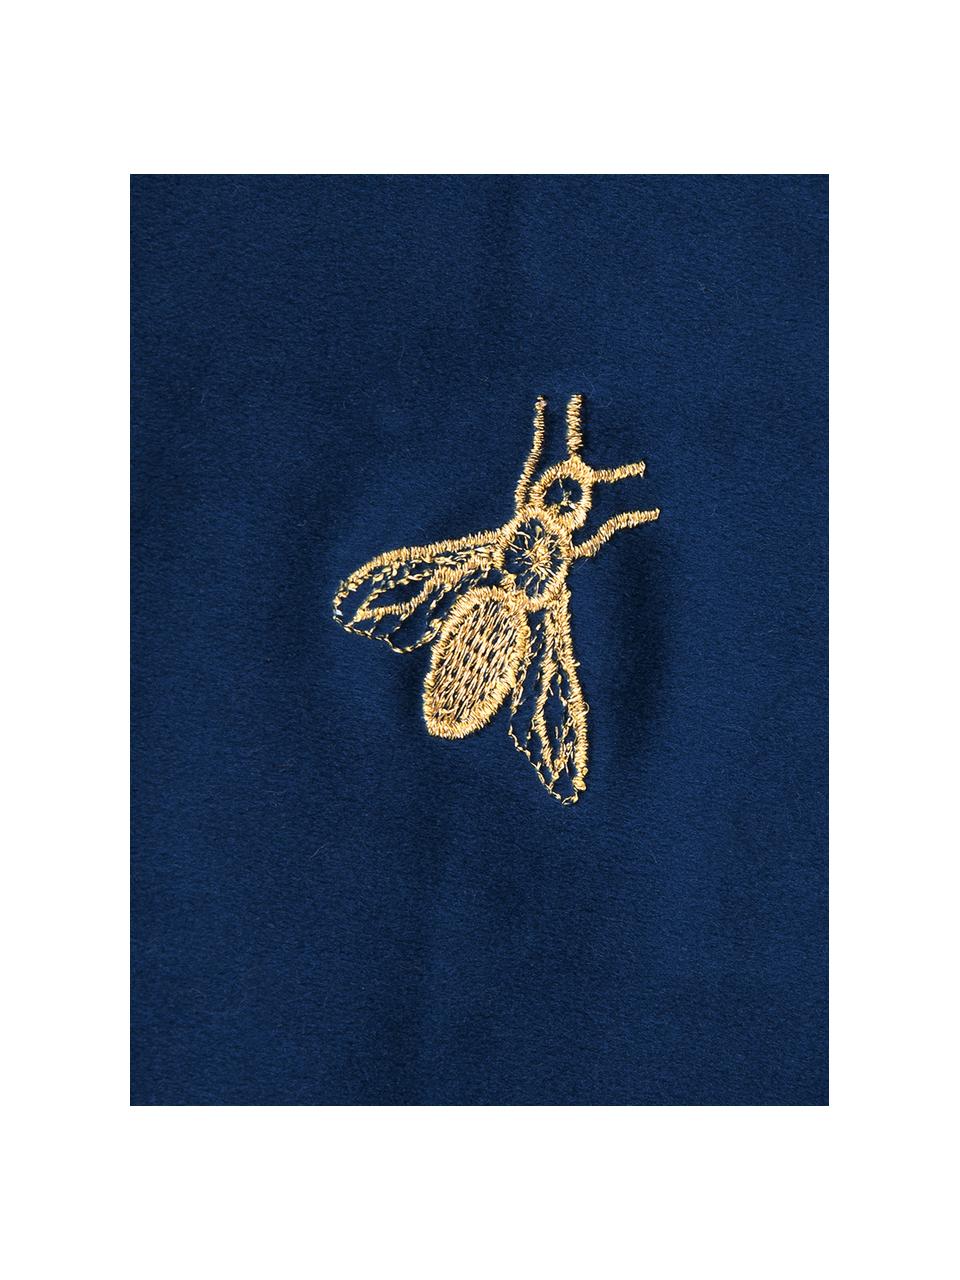 Bestickte Samt-Kissenhülle Nora in Blau/Gold, 100% Polyestersamt, Navyblau, 45 x 45 cm